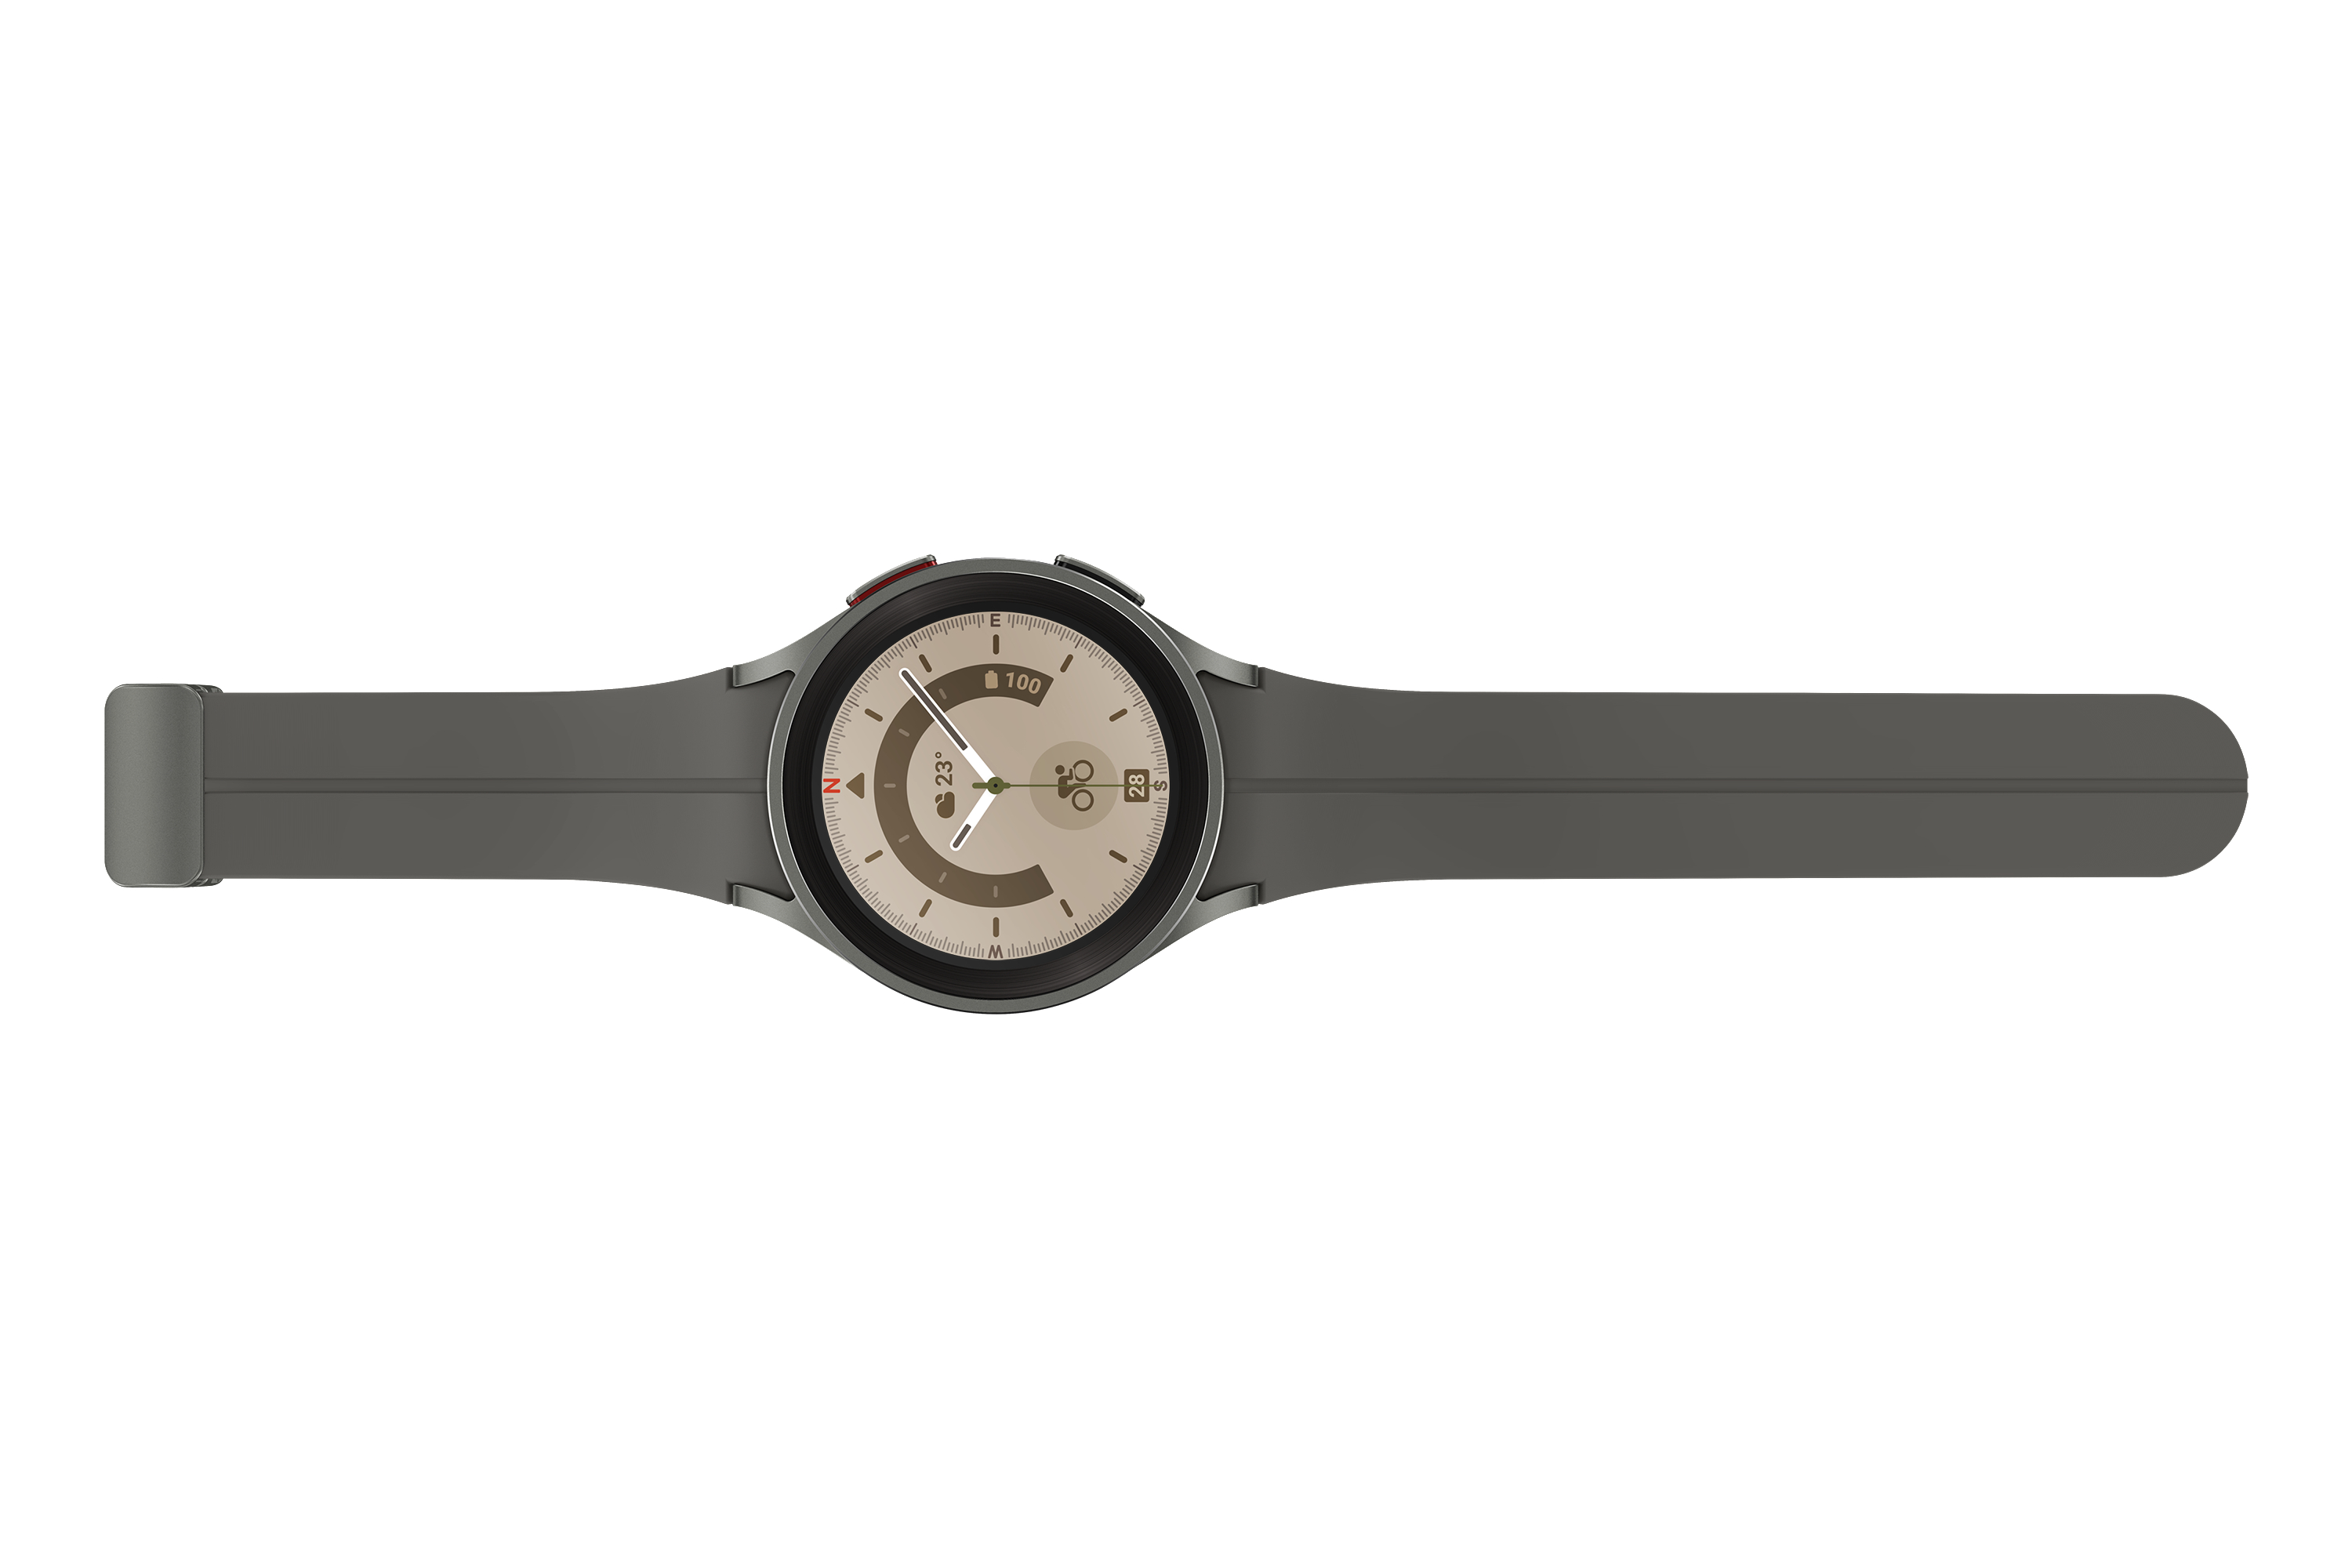 Galaxy Pro Titan M/L, Watch5 45 SAMSUNG mm Gray Smartwatch Fluorkautschuk, Titanium LTE